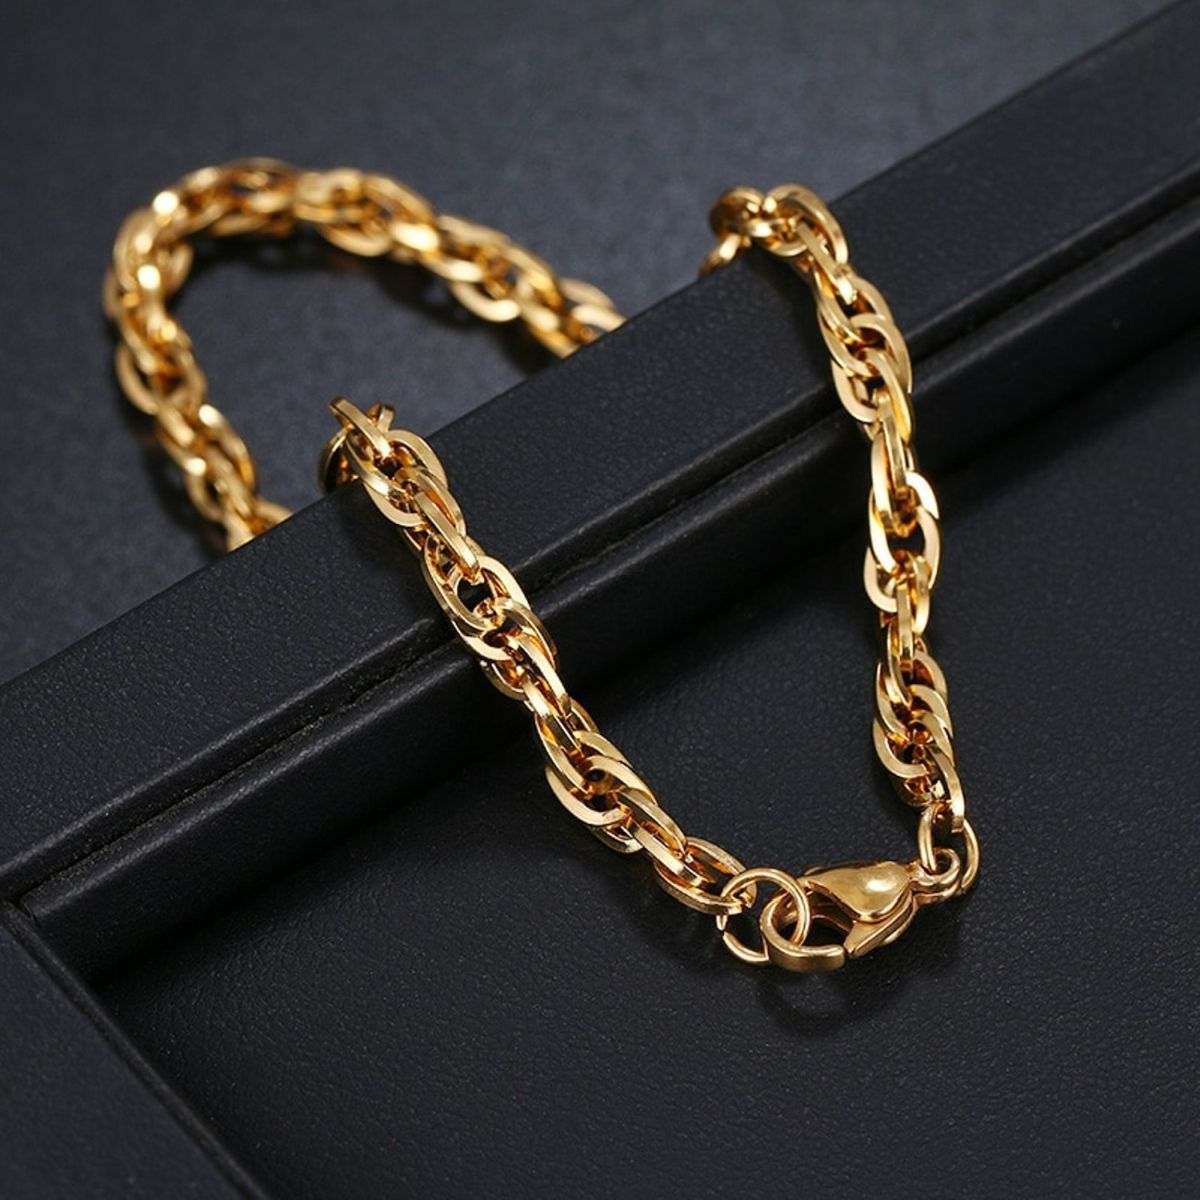 Triple Links Korean 18K Gold Placed Links Chain Bracelet For Men